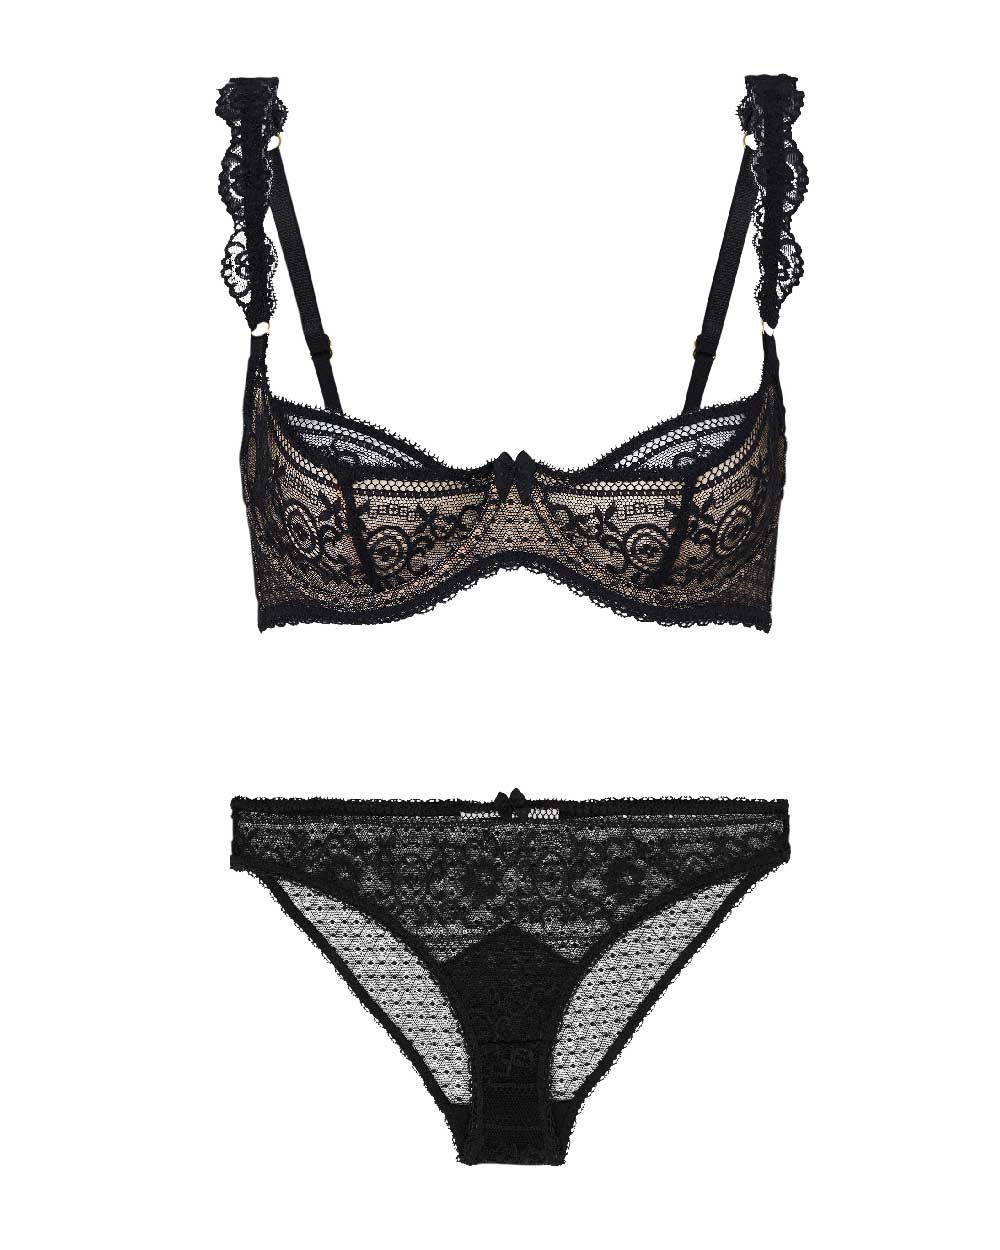 Stella McCartney lingerie set, $180